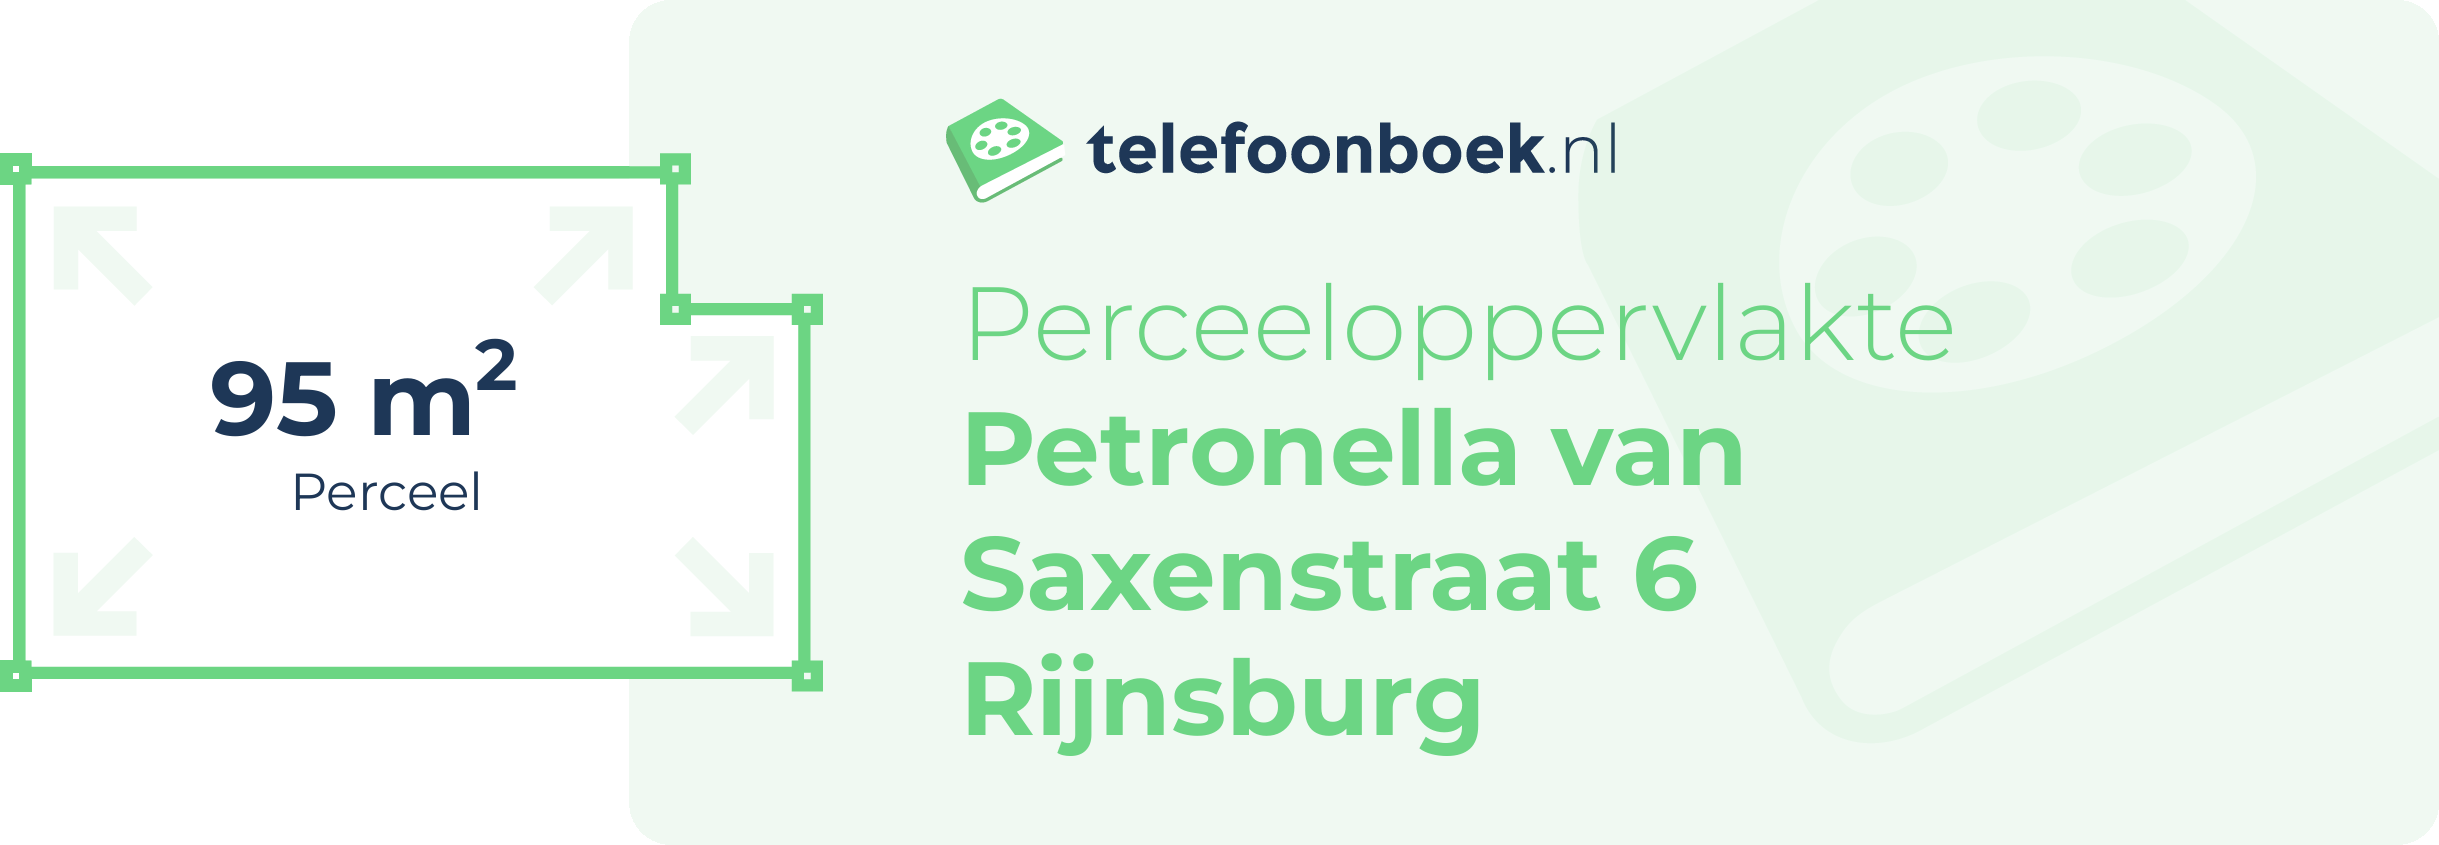 Perceeloppervlakte Petronella Van Saxenstraat 6 Rijnsburg